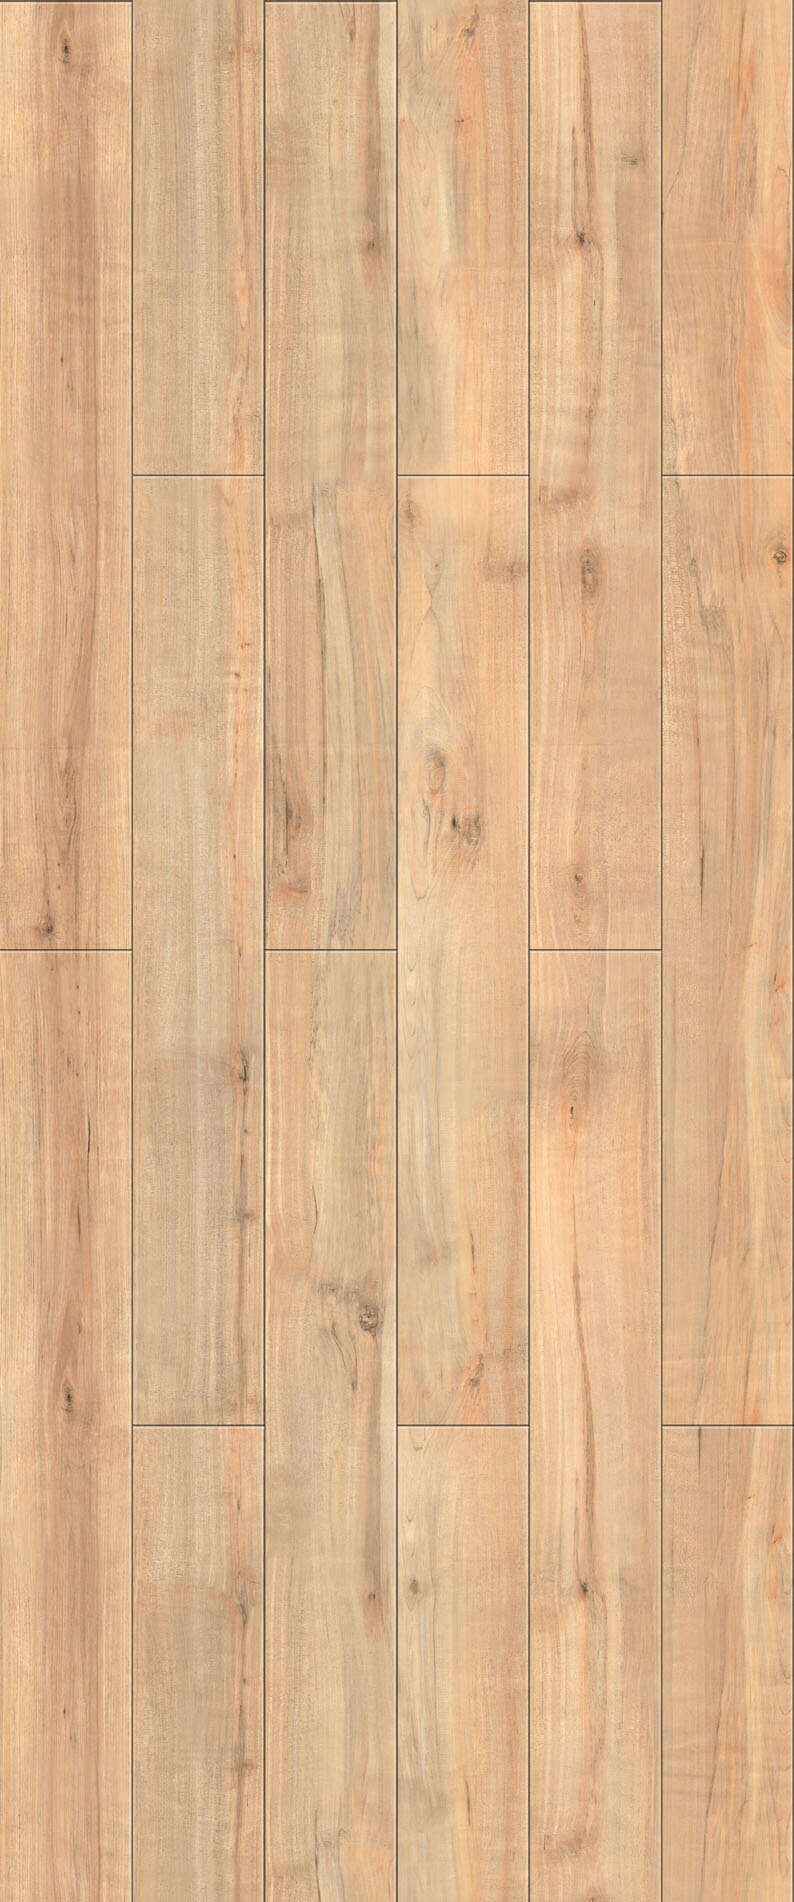 木地板 贴图 室内设计 木材贴图 木地板贴图 木地板效果图 装修效果图 木地板材质 装饰素材 室内装饰用图